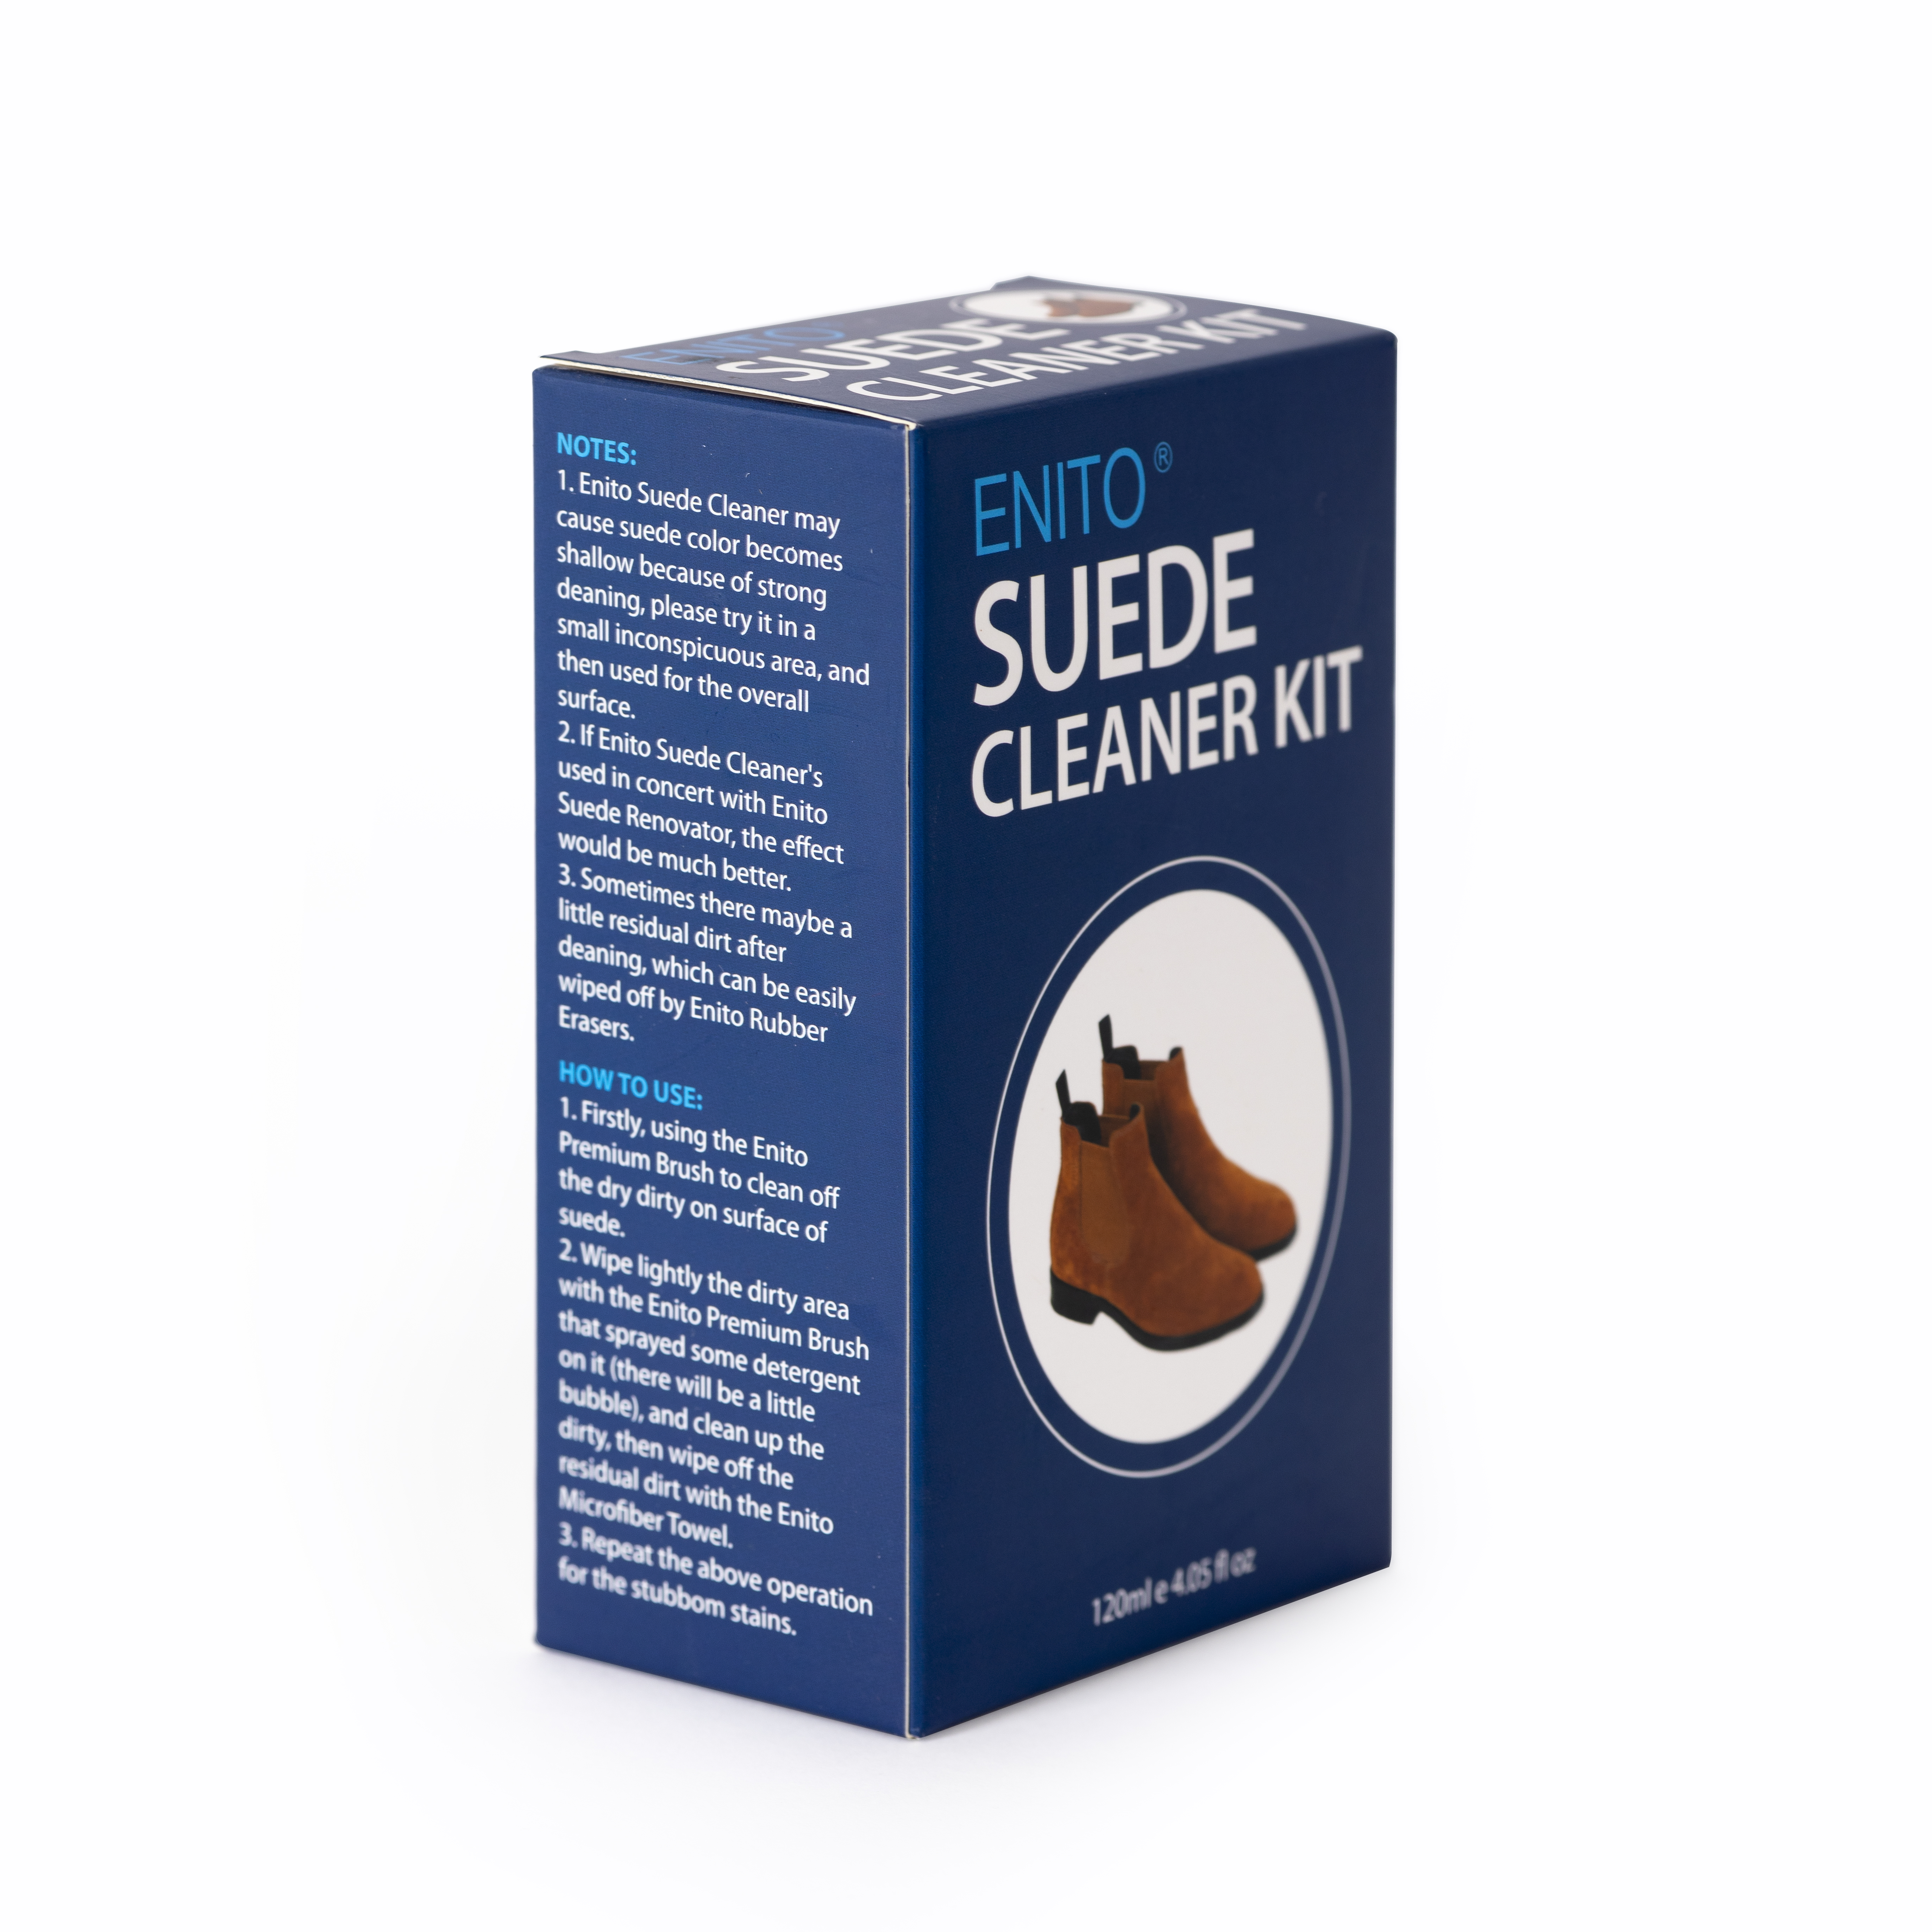 Bộ Vệ Sinh Giày Da Lộn Enito Suede Clean Kit 2021 - Dung tích 120ml - Chuyên Vệ Sinh Các Loại Giày Da Lộn, Da nurbuck